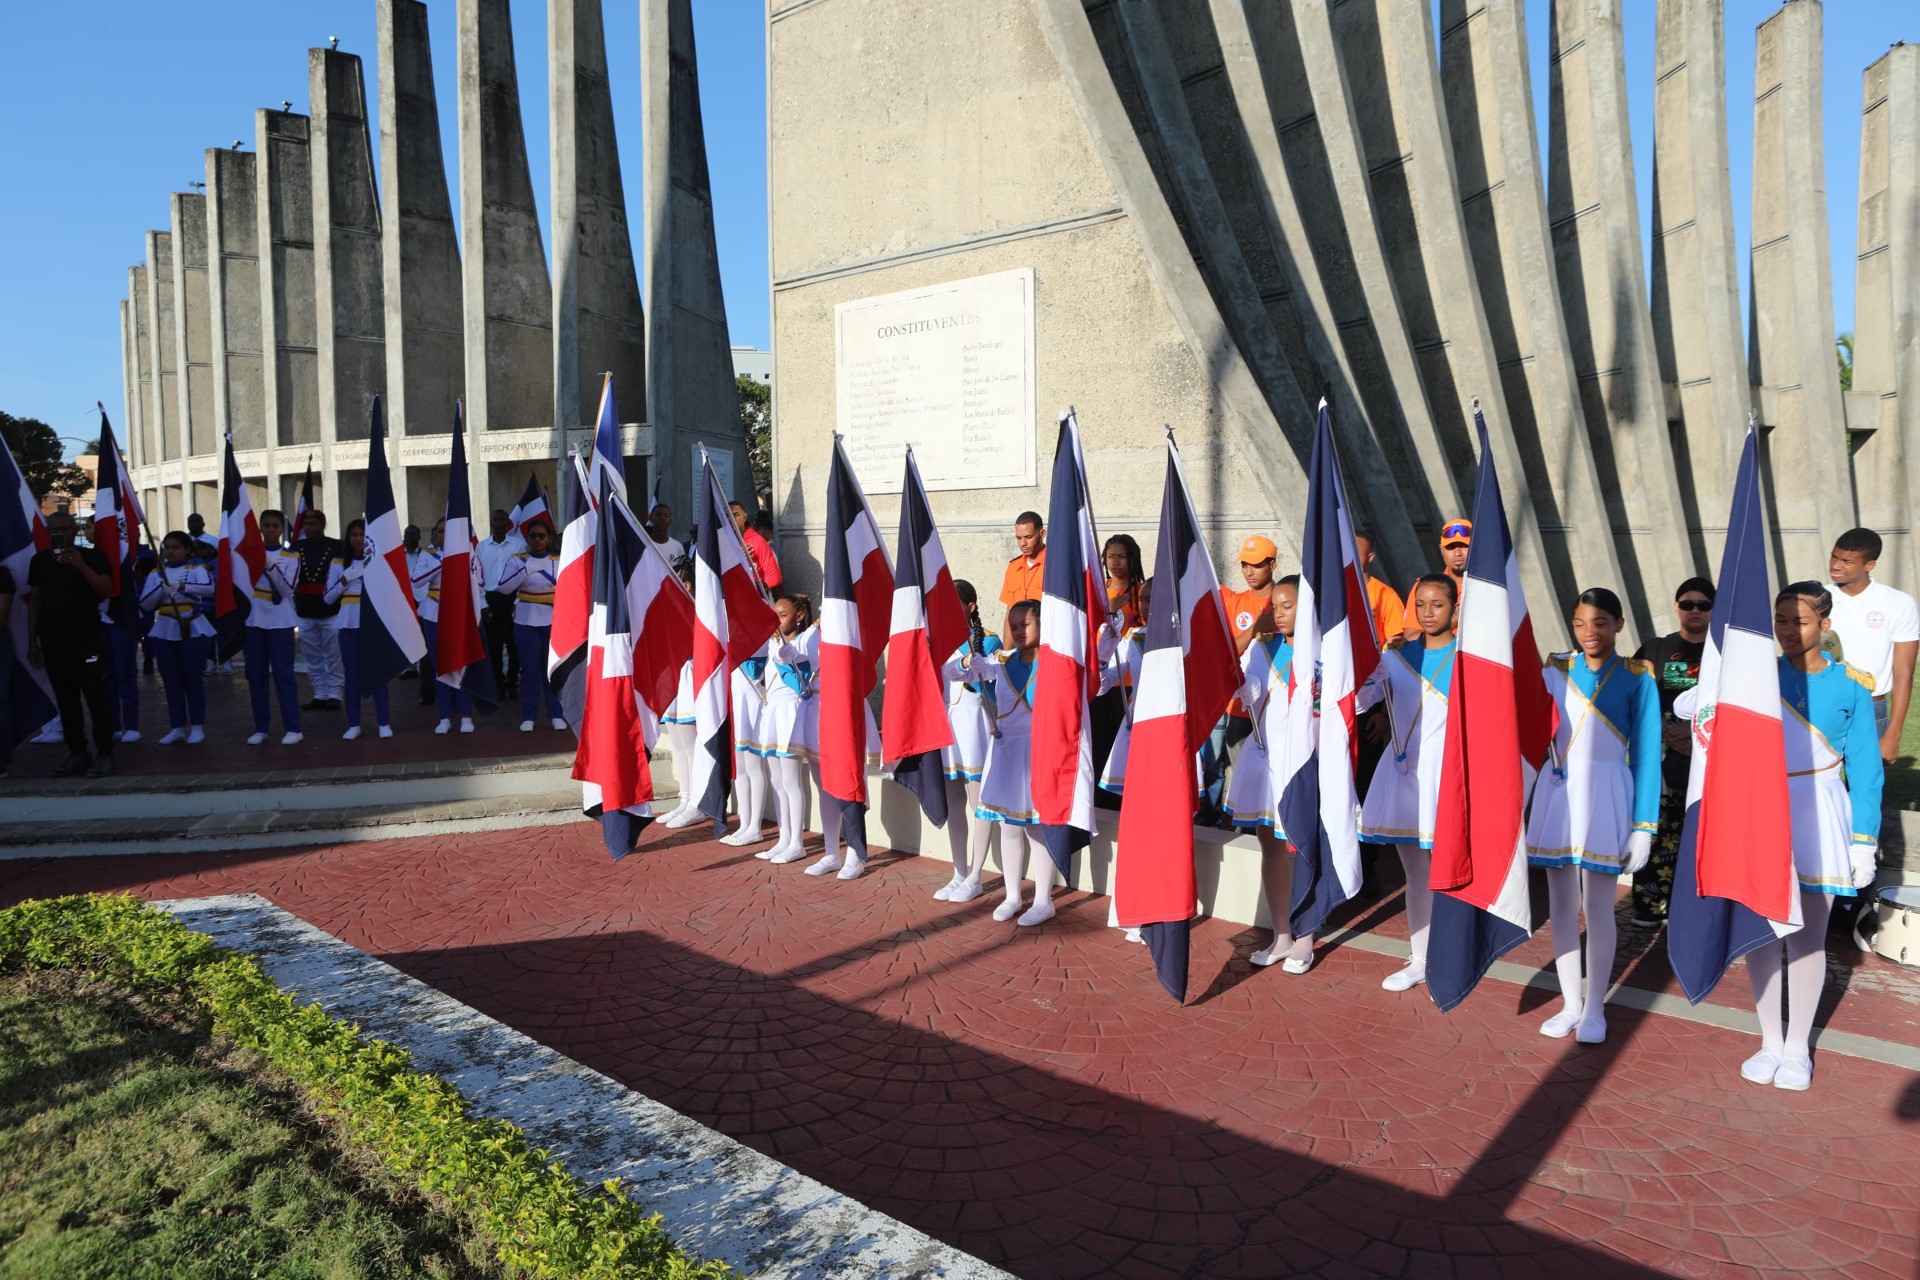 En San Cristóbal inician actos conmemorativos por 179 aniversario de la Constitución 3